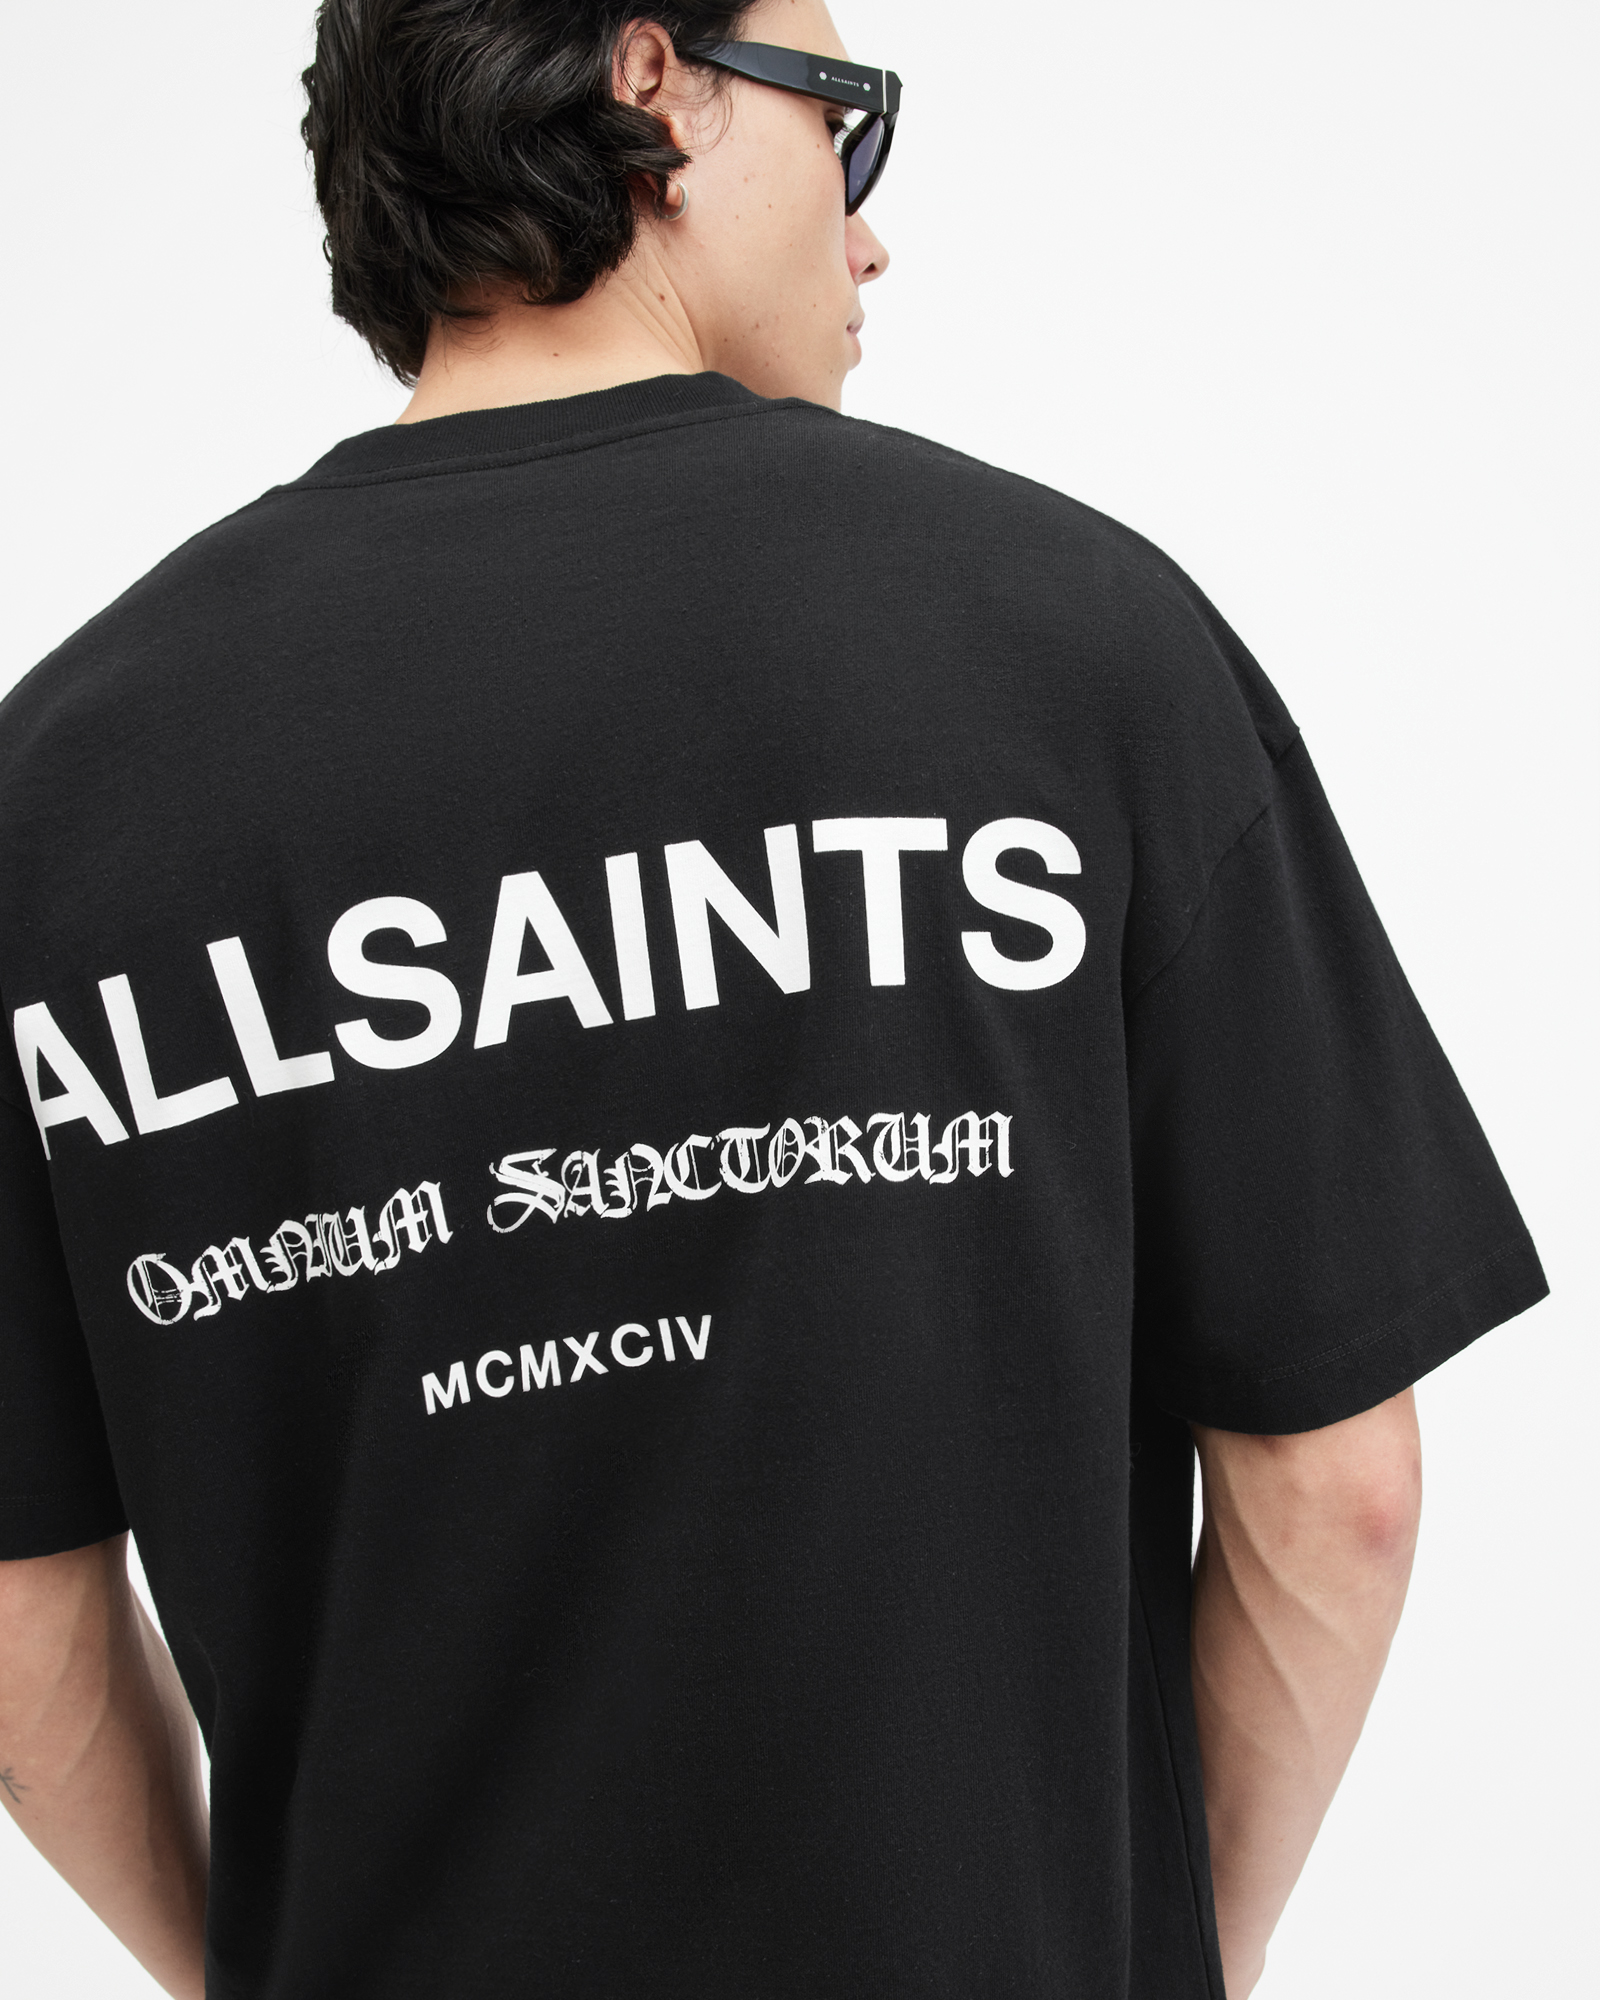 AllSaints Sanctum Oversized Gothic Logo T-Shirt